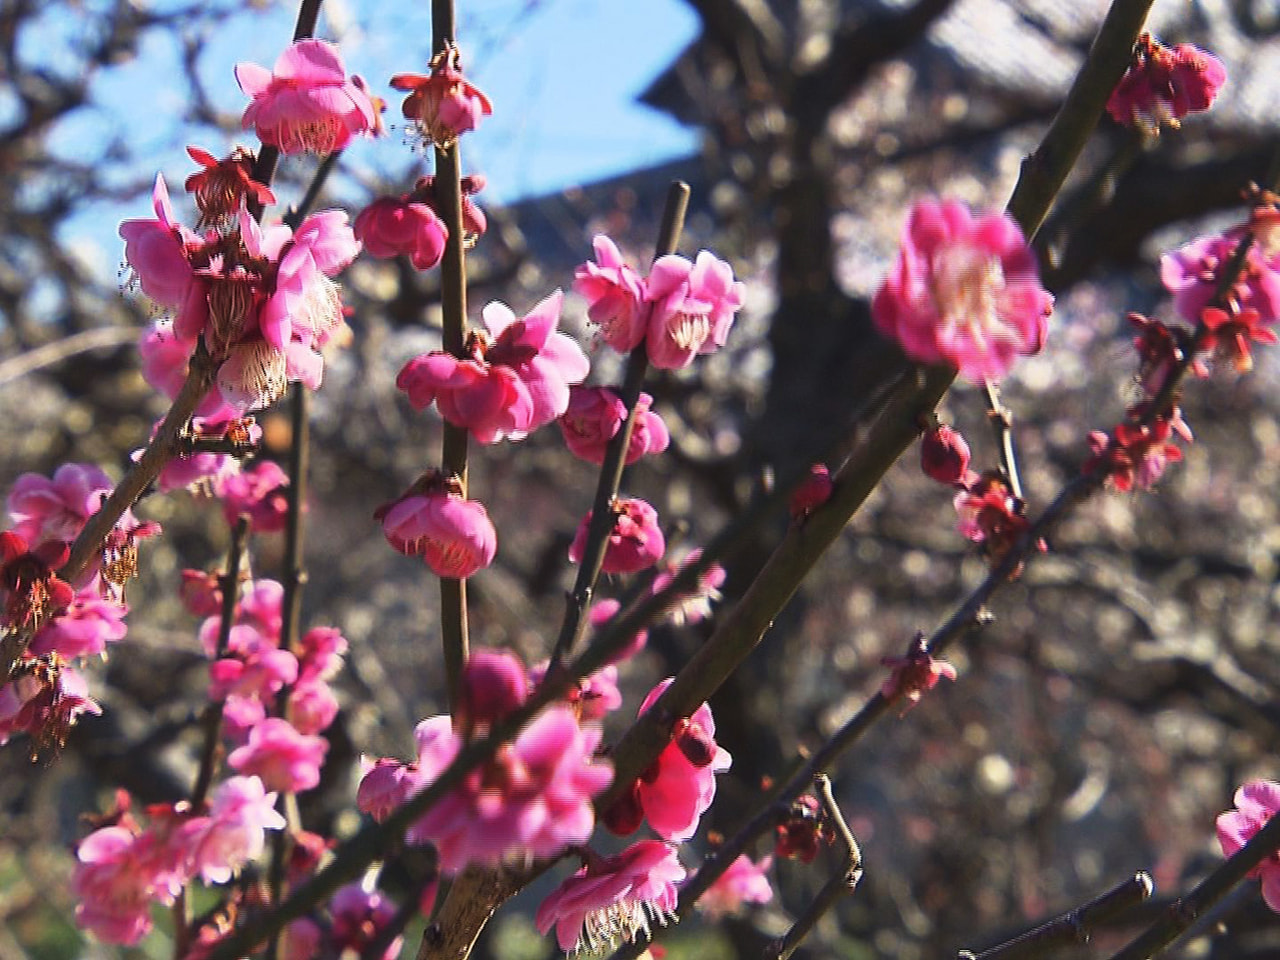 きれいに咲き誇る梅の花が春の訪れを感じさせます。 梅の名所として知られる安八郡安...